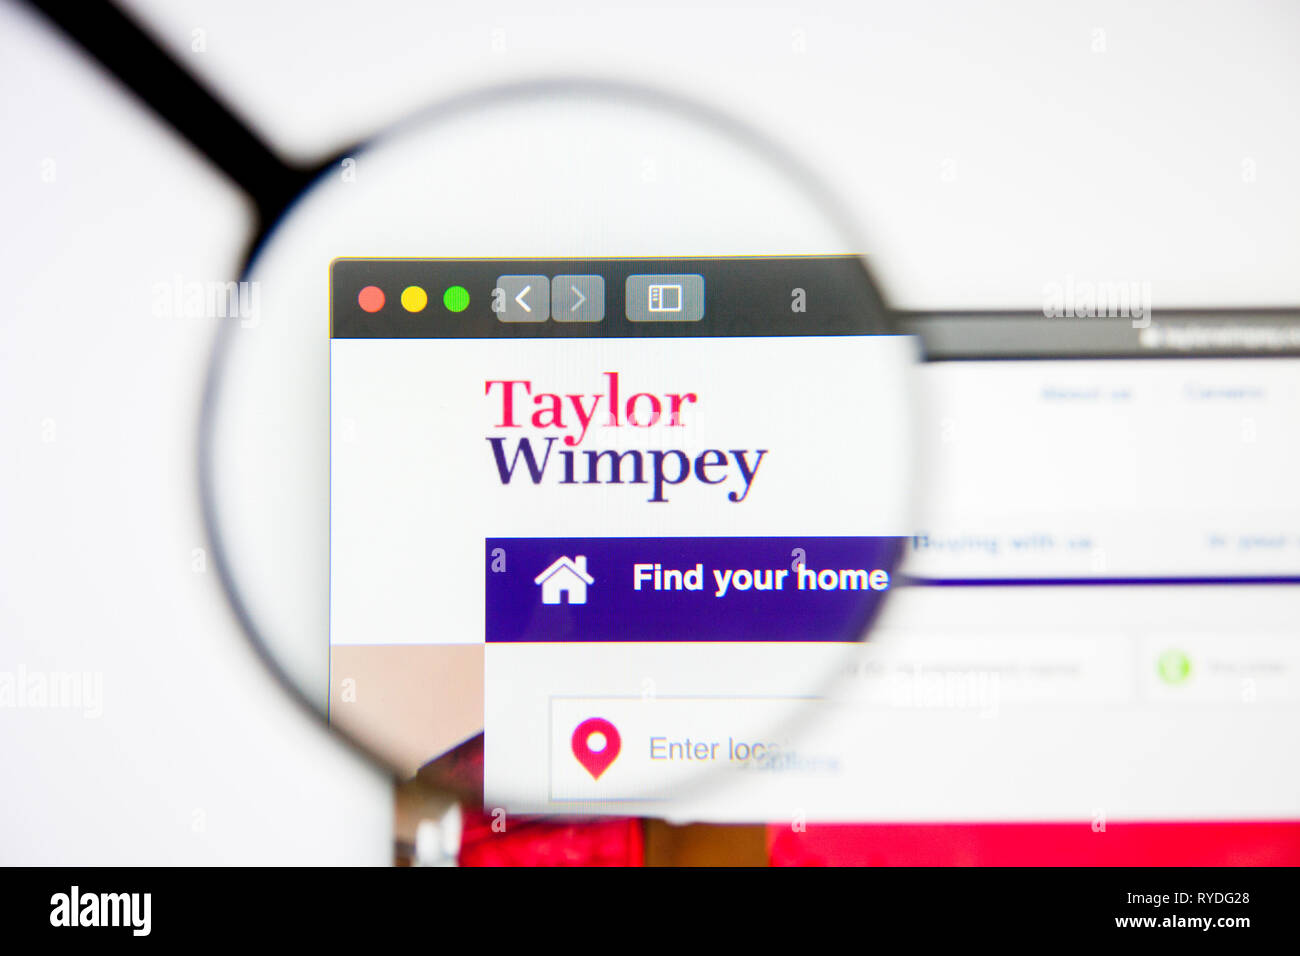 Los Angeles, California, Stati Uniti d'America - 5 Marzo 2019: Taylor Wimpey website homepage. Taylor Wimpey logo visibile sulla schermata di visualizzazione illustrativa editoriale Foto Stock